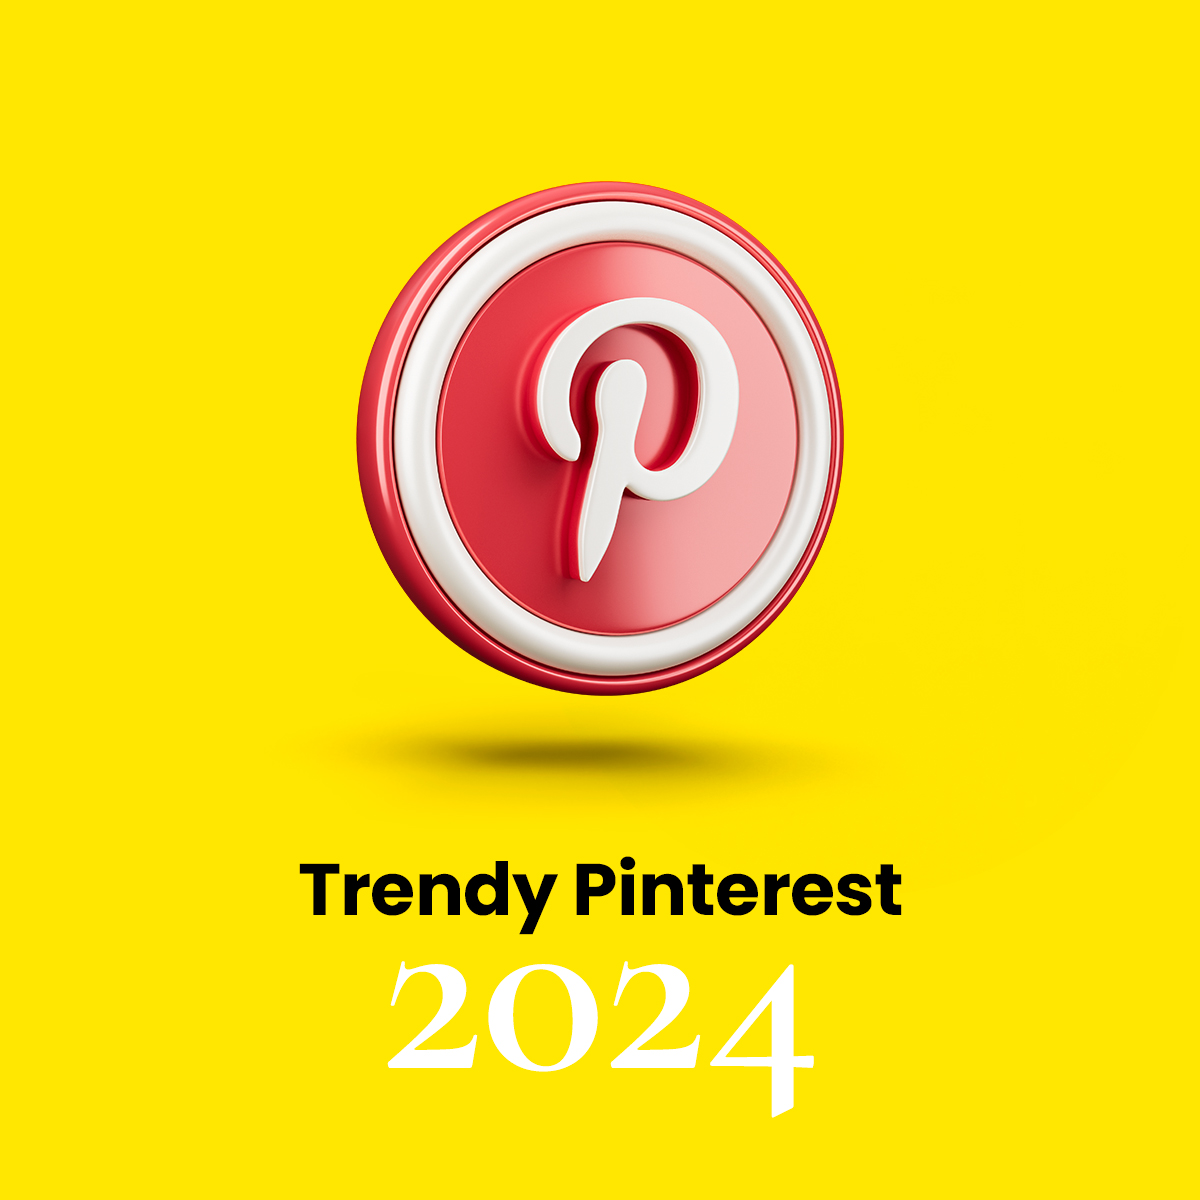 Trendy Pinterest 2024 – to eksplozja inspiracji którą warto znać!